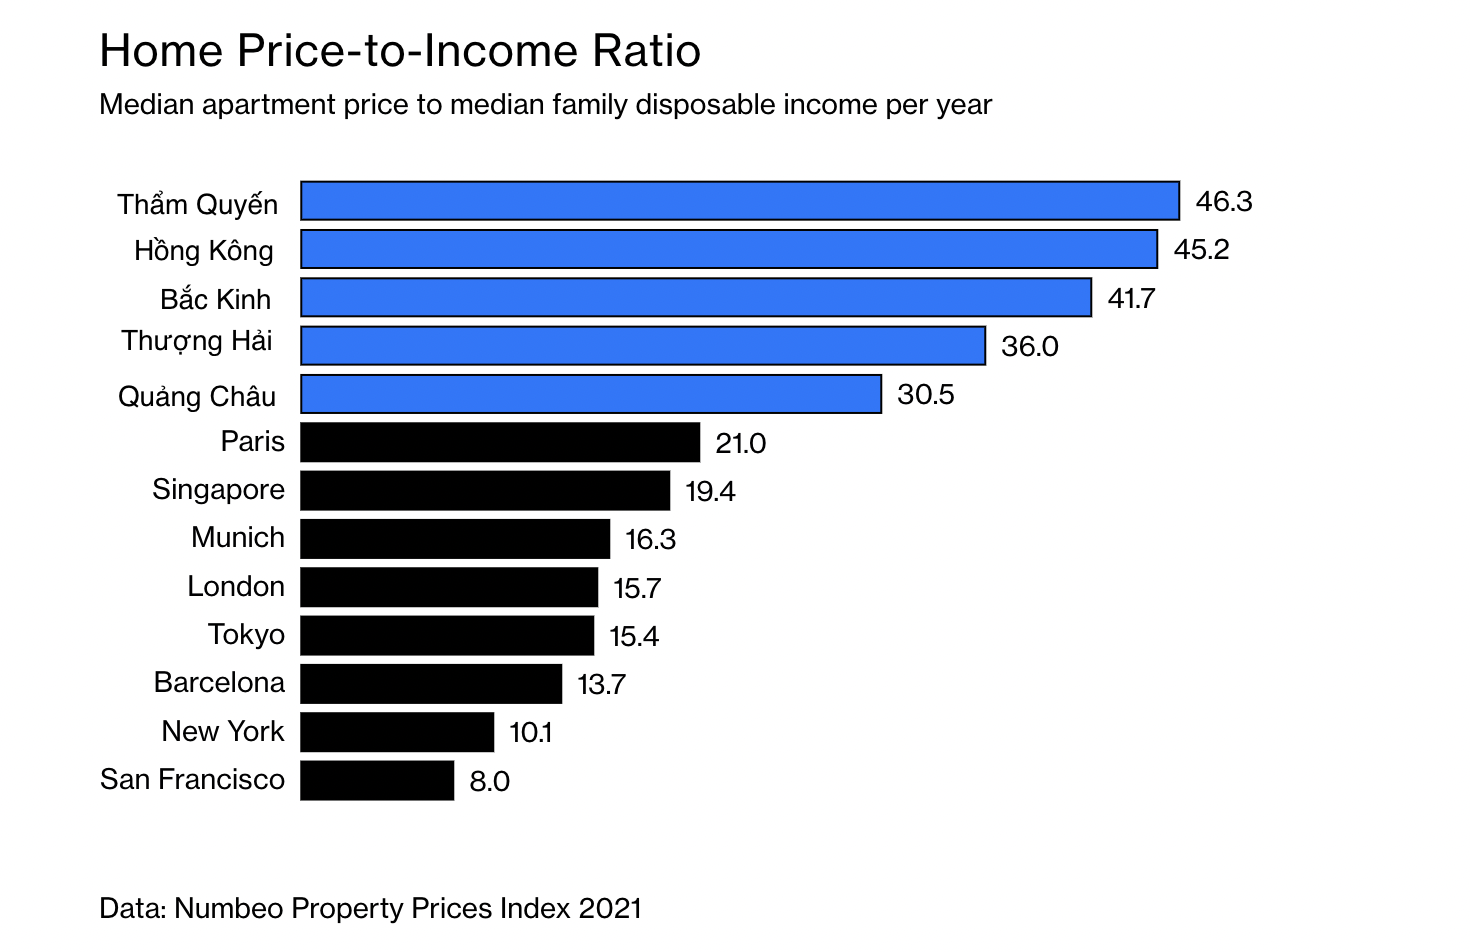 Tỷ lệ giữa giá căn hộ trung bình và thu nhập khả dụng hàng năm của hộ gia đình ở một số thành phố Trung Quốc và thế giới.